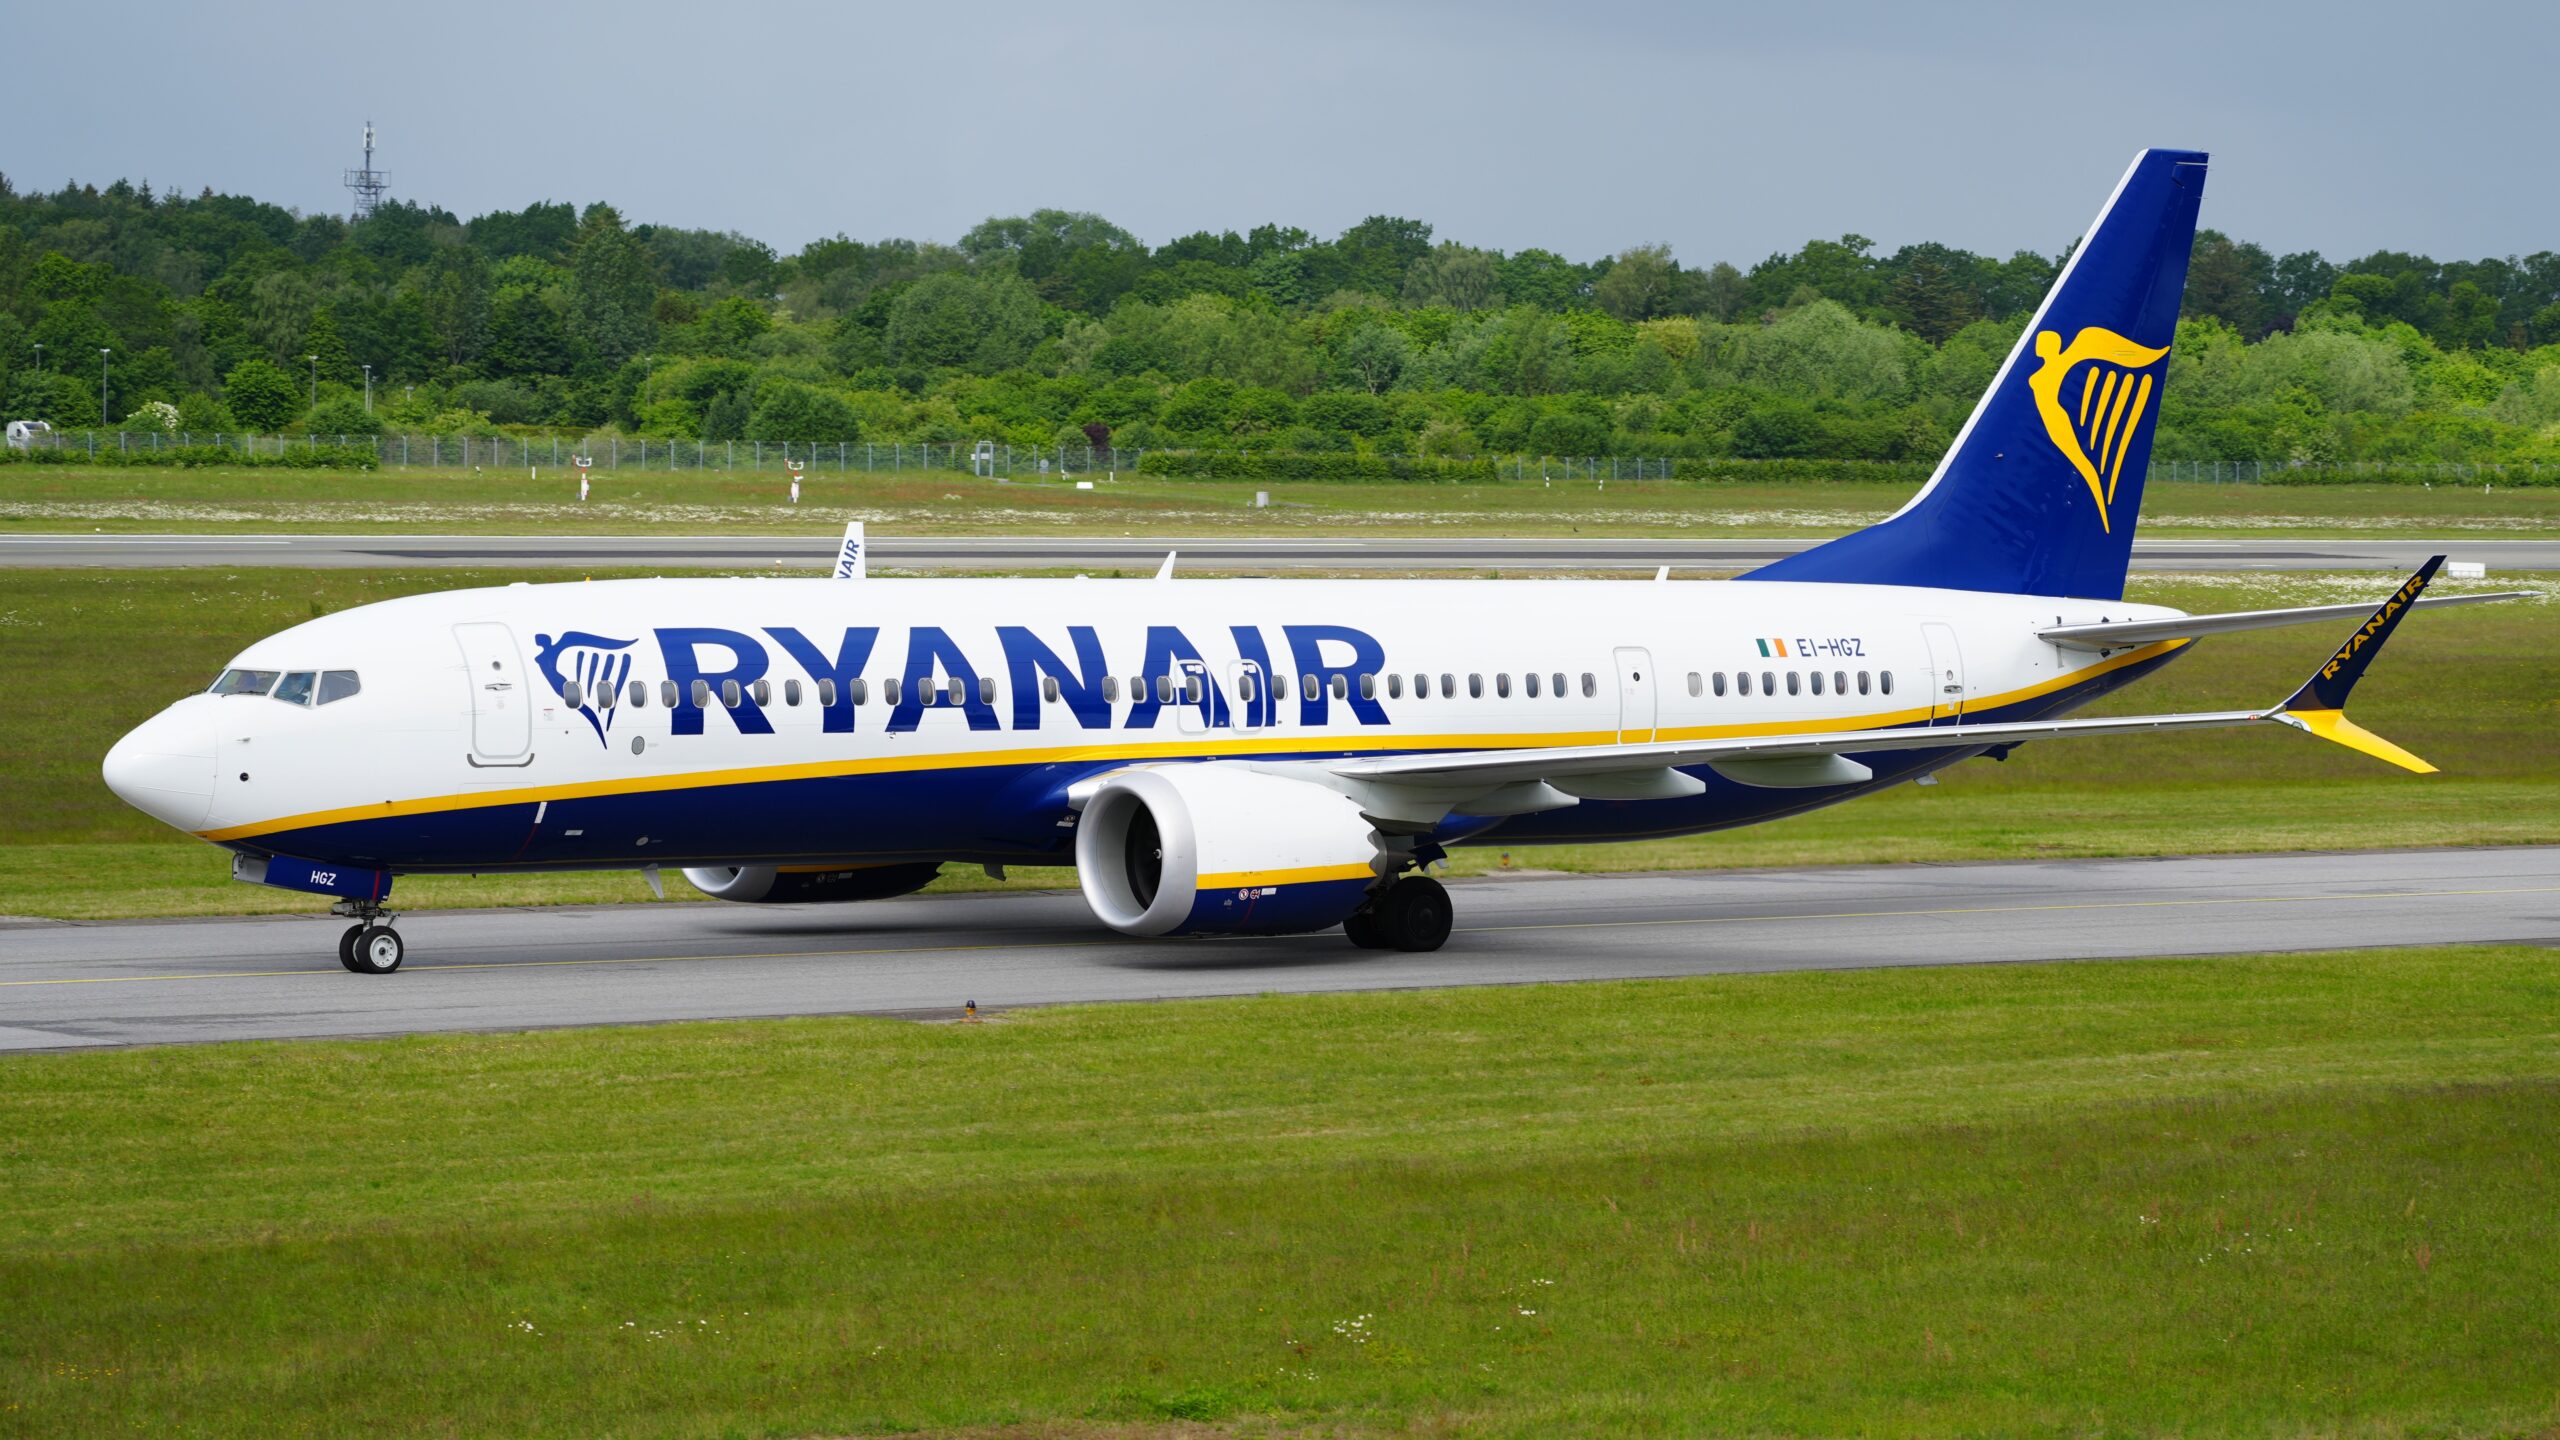 Samolot Ryanair model Boeing 737-800 z rejestracją EI-HGZ na pasie startowym lotniska.